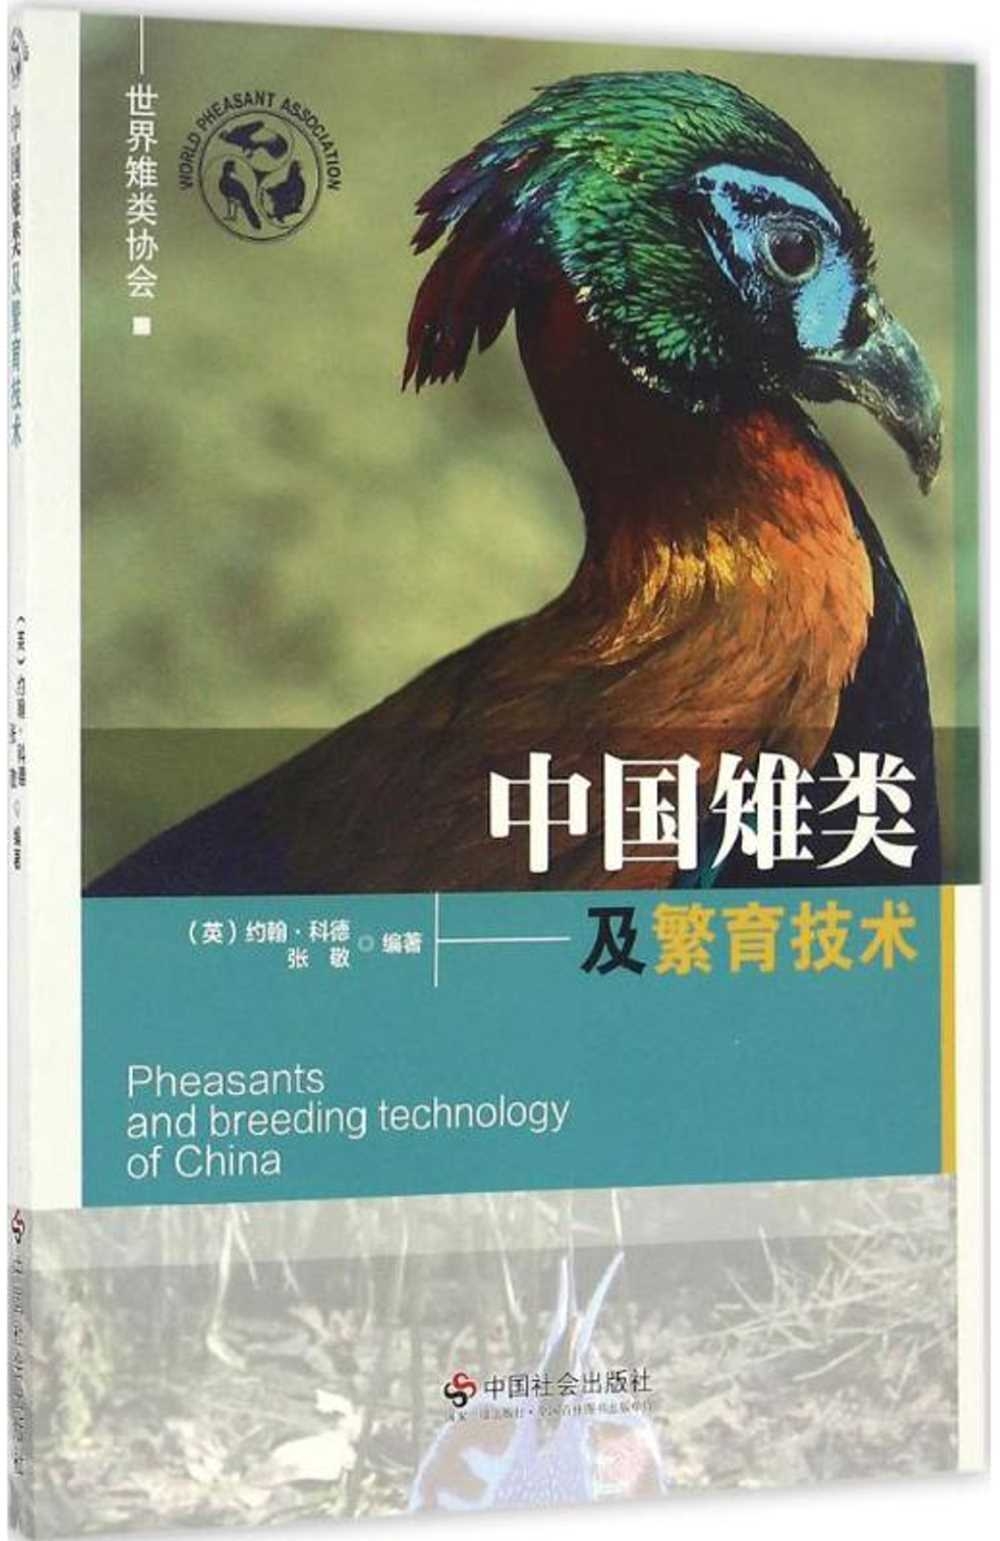 中國雉類及繁育技術